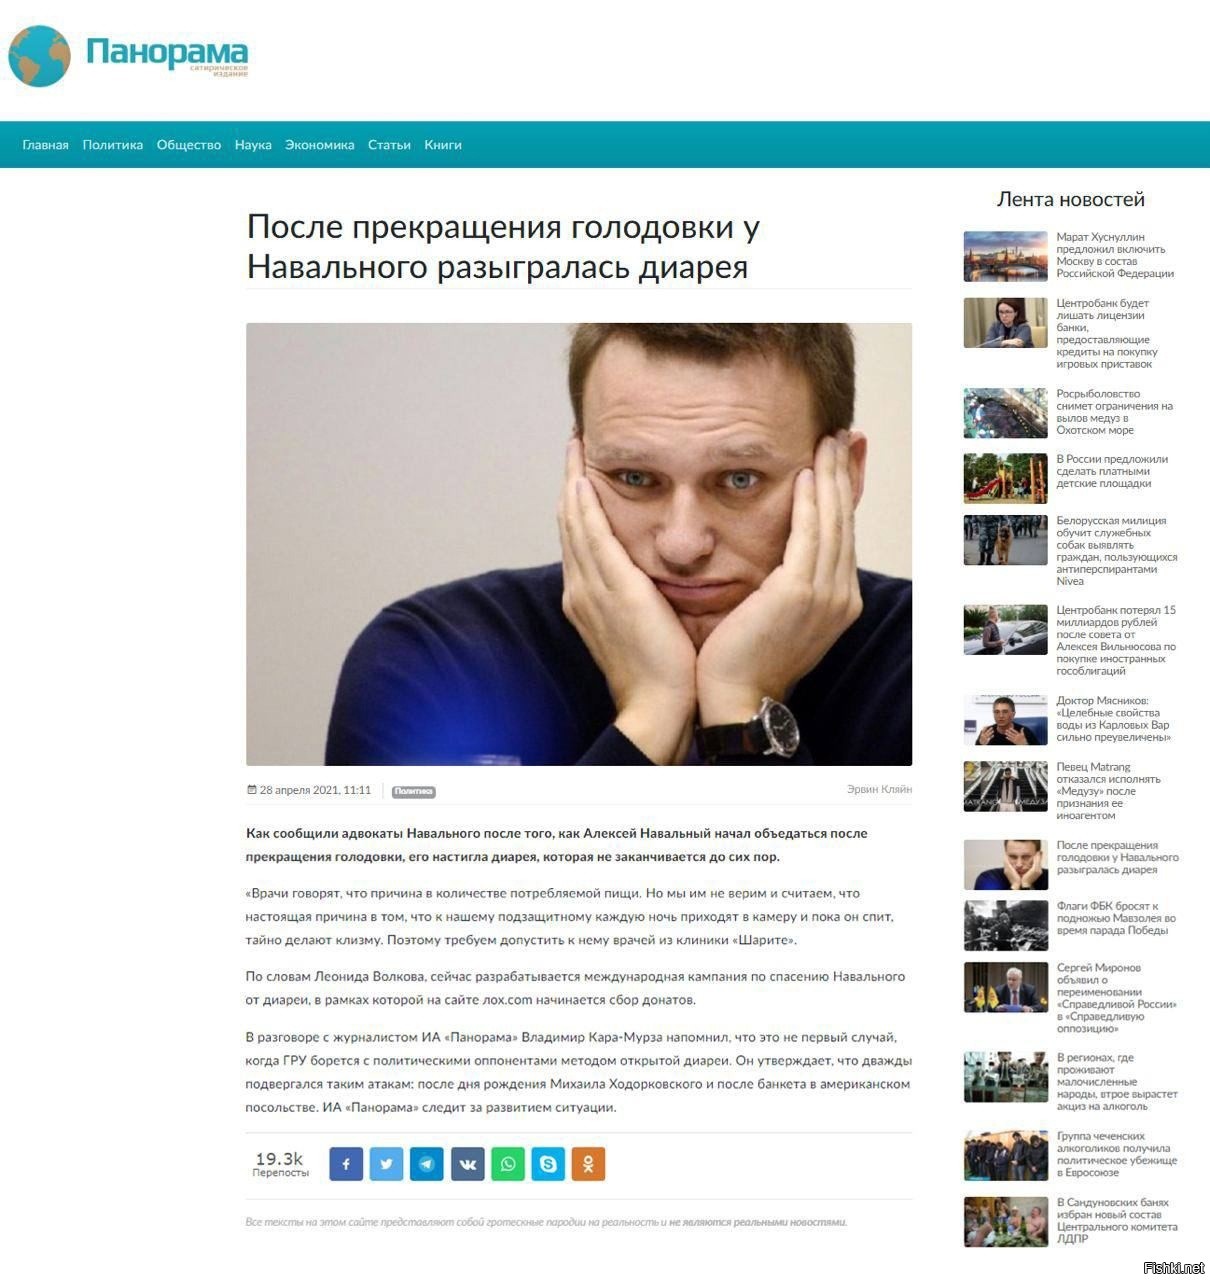 Откуда появился навальный. Навальный после голодовки. Навальный панорама. Навальный 2018. Навальный объявил голодовку.